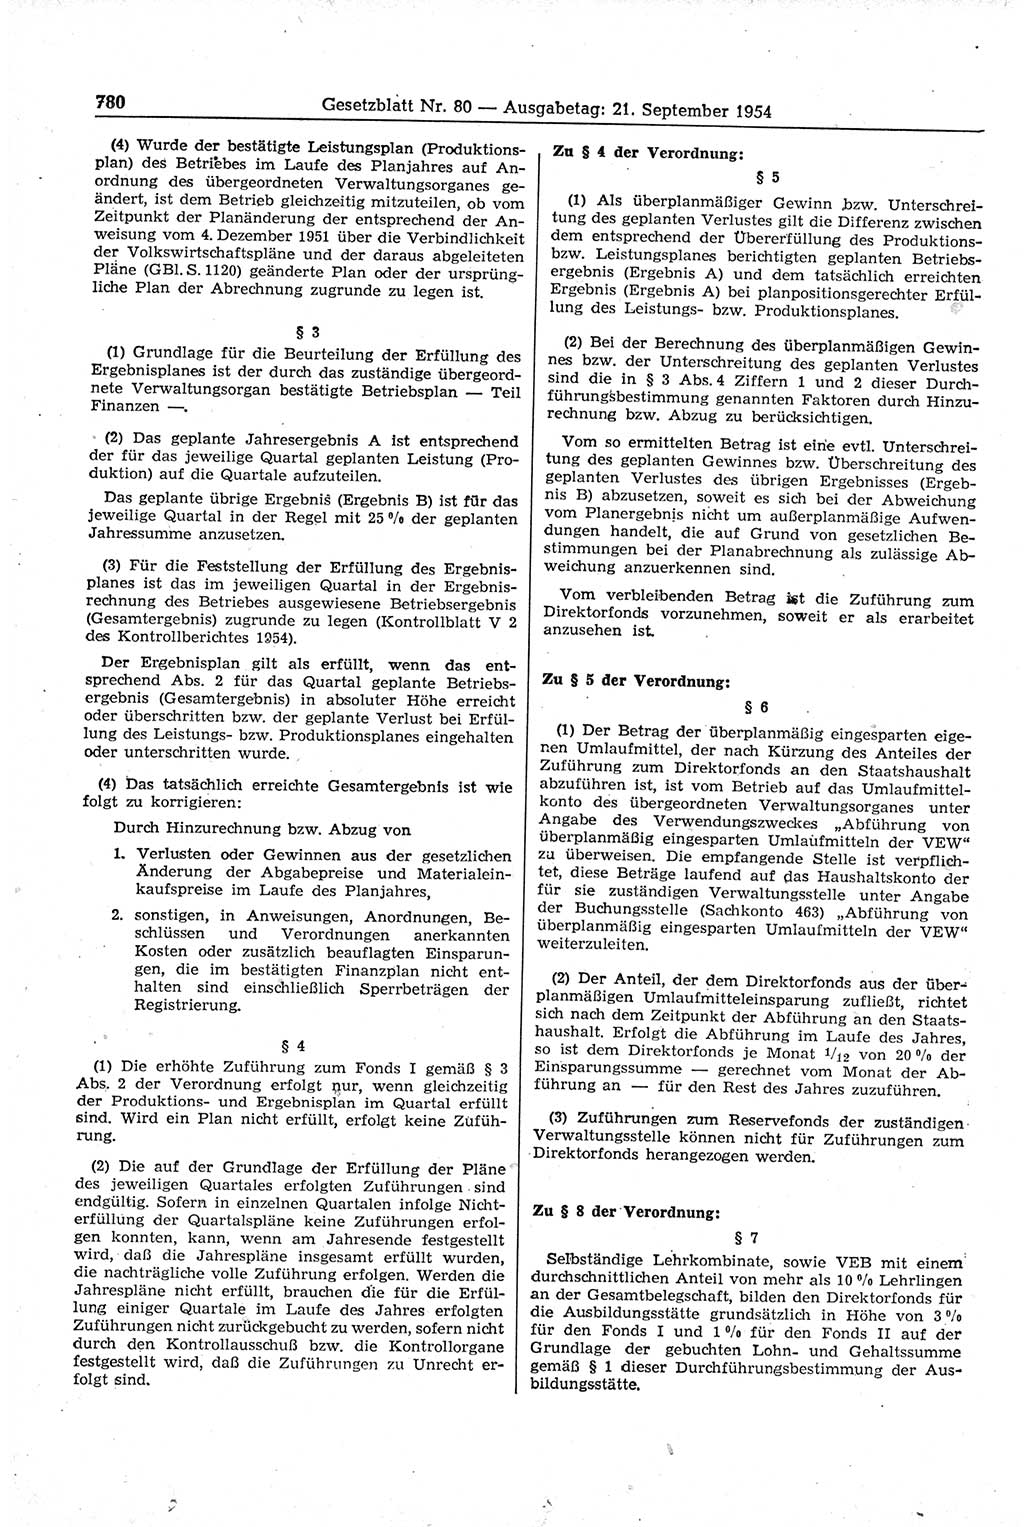 Gesetzblatt (GBl.) der Deutschen Demokratischen Republik (DDR) 1954, Seite 780 (GBl. DDR 1954, S. 780)